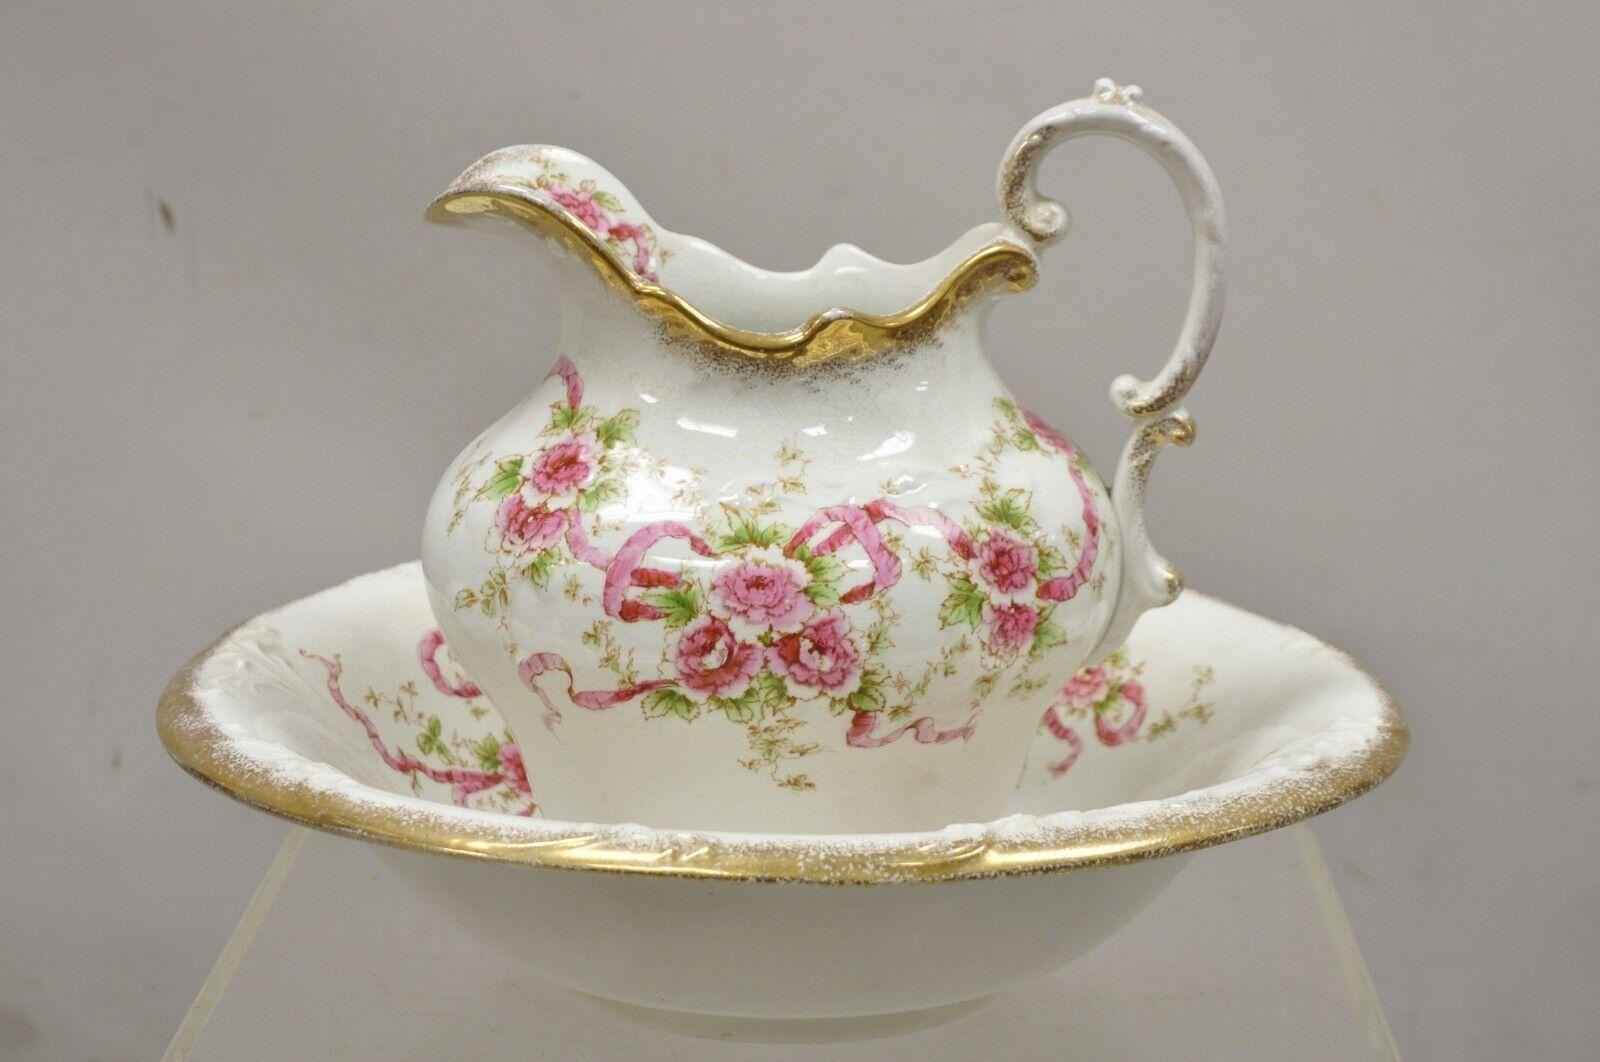 Antique W.H. Tatler Porcelain Pink Rose Flower Wash Basin - 4 Pc Set. Item features (4) pcs, gold gilt details, pink rose flowers, original stamp, includes (1) large jug, (1) smaller jug, (1) large basin, (1) basin with handle. Circa 1900.